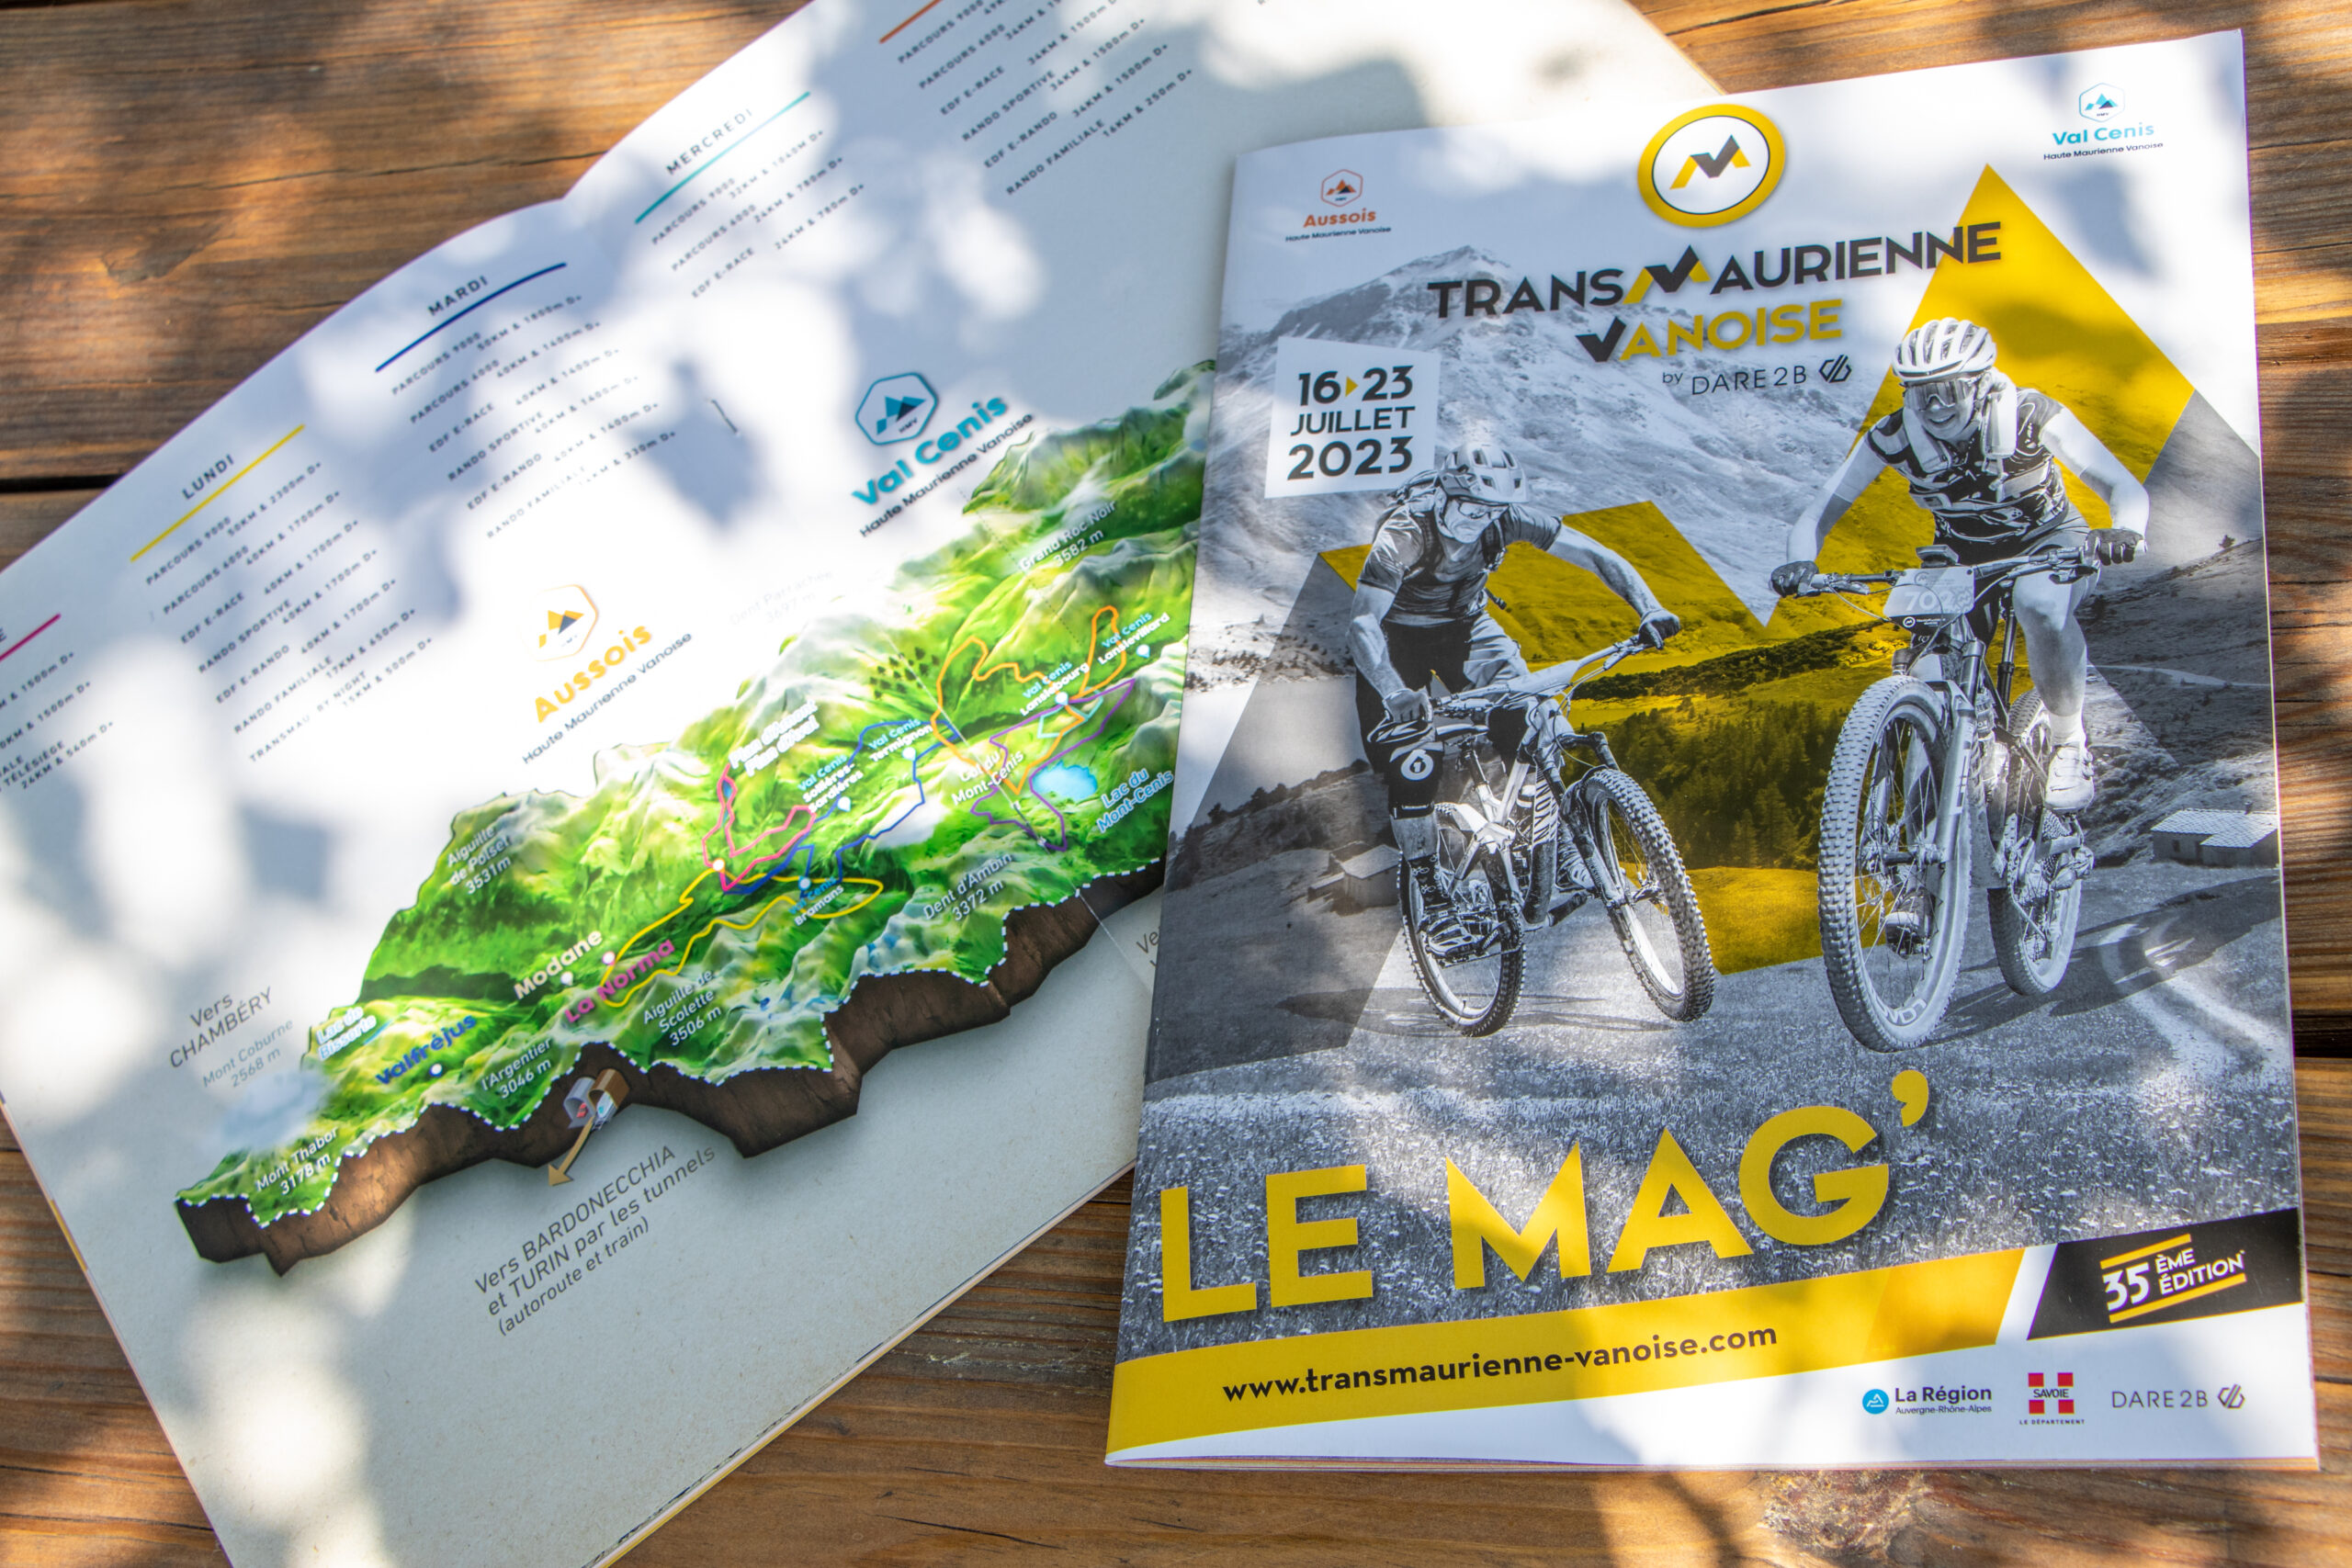 Featured image for “Découvrez le Mag’ de l’événement”